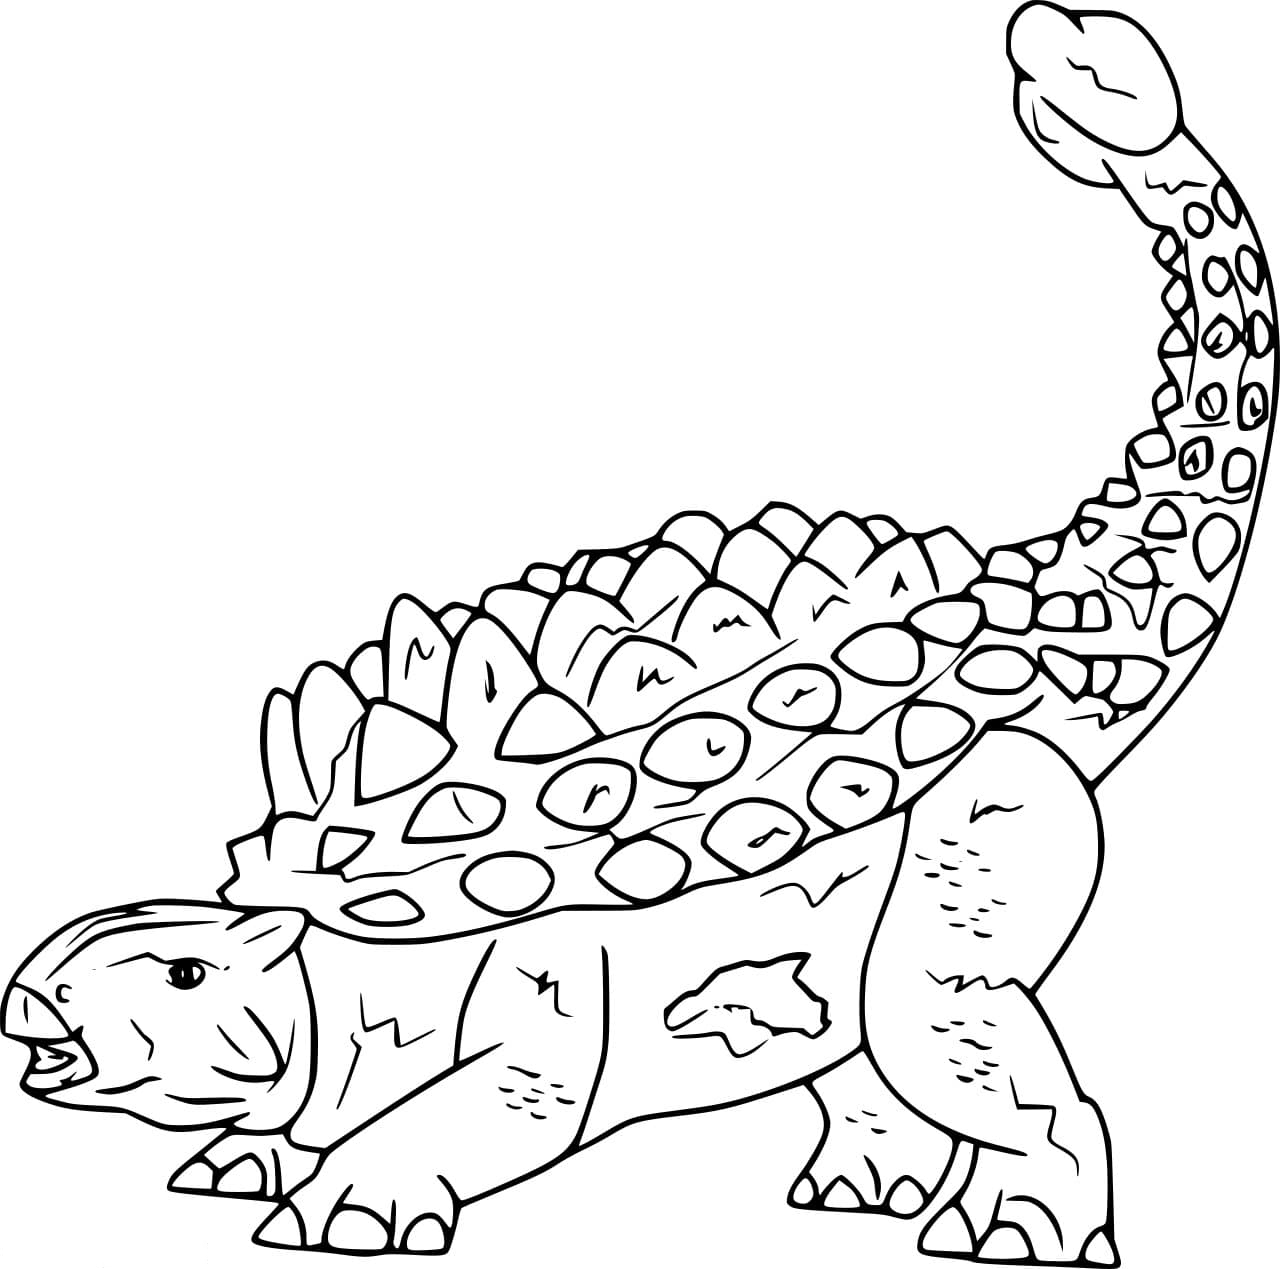 Crichtonsaurus Ankylosaurid Dinosaur